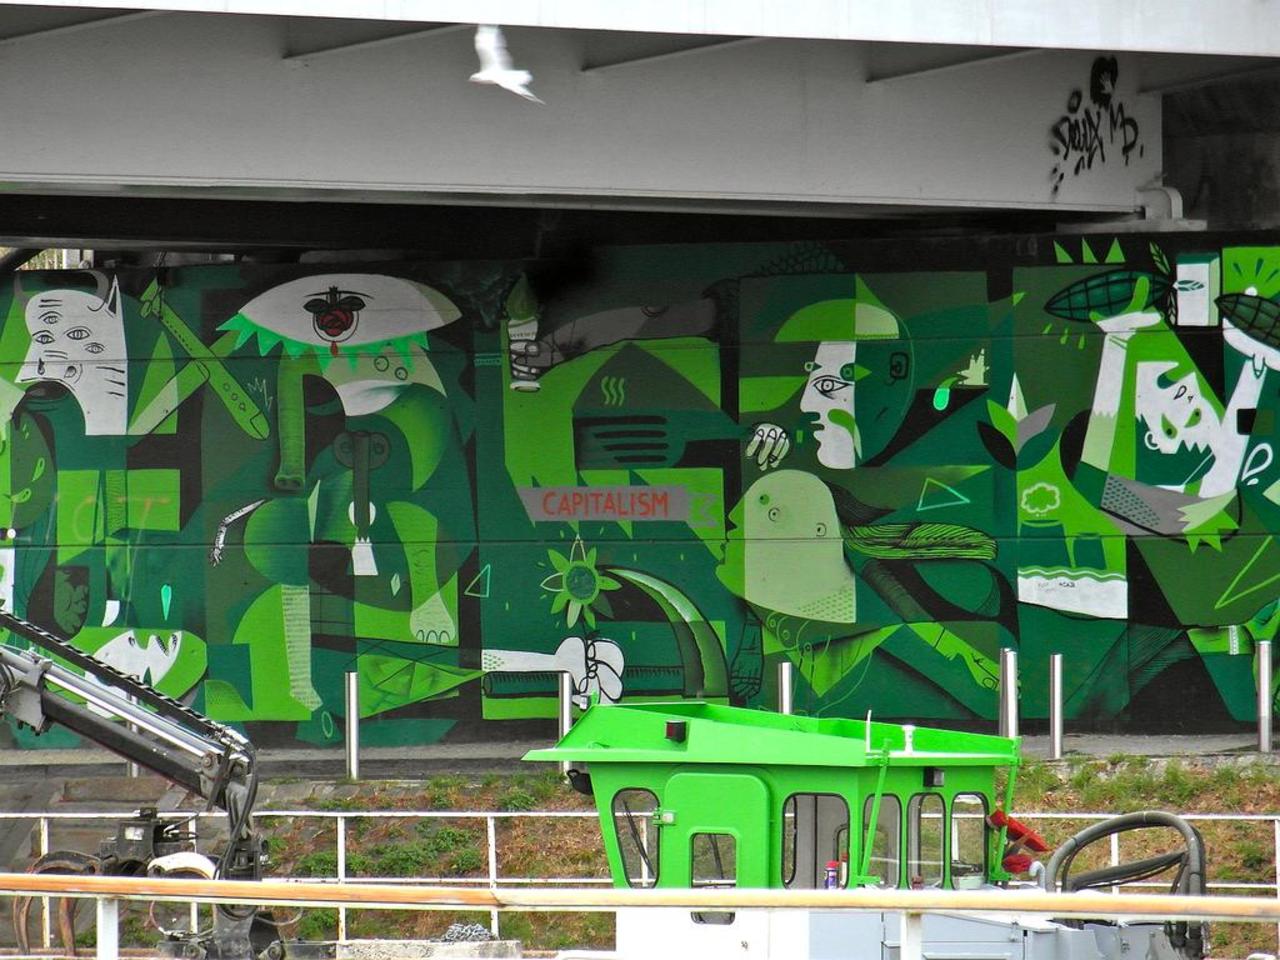 Street Art by KAZY USCLEF et PEDRO in #Nantes http://www.urbacolors.com #art #mural #graffiti #streetart http://t.co/WYlfr21Zq9